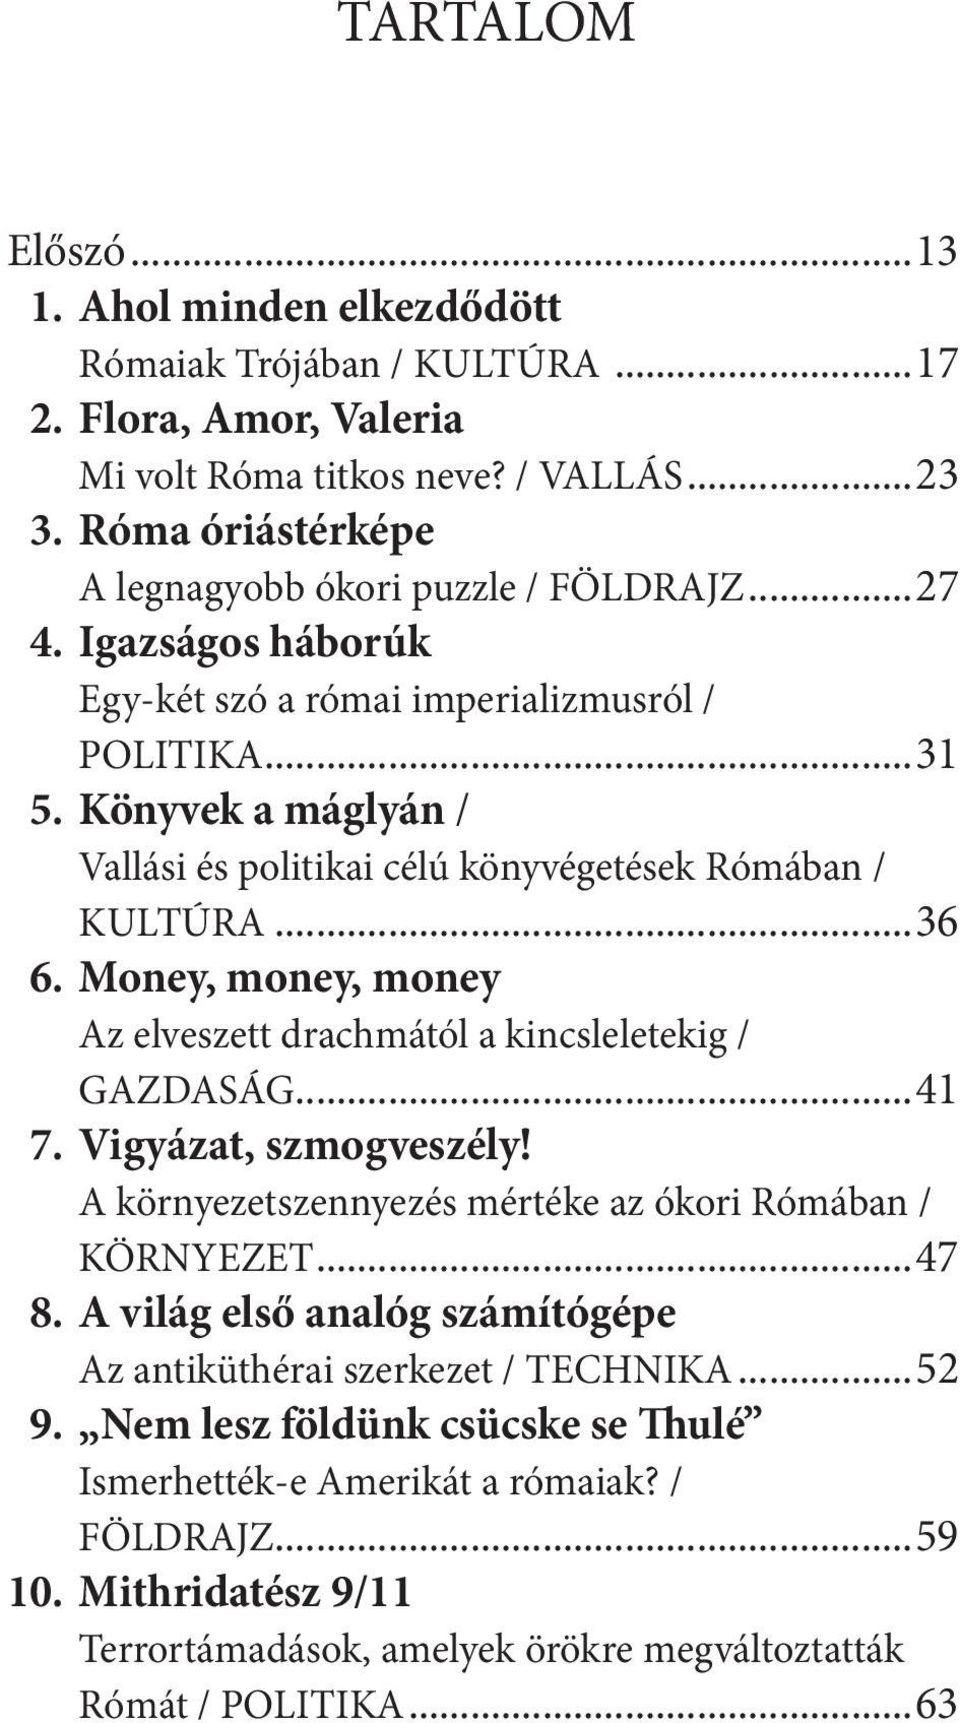 Könyvek a máglyán / Vallási és politikai célú könyvégetések Rómában / KULTÚRA...36 6. Money, money, money Az elveszett drachmától a kincsleletekig / GAZDASÁG...41 7. Vigyázat, szmogveszély!